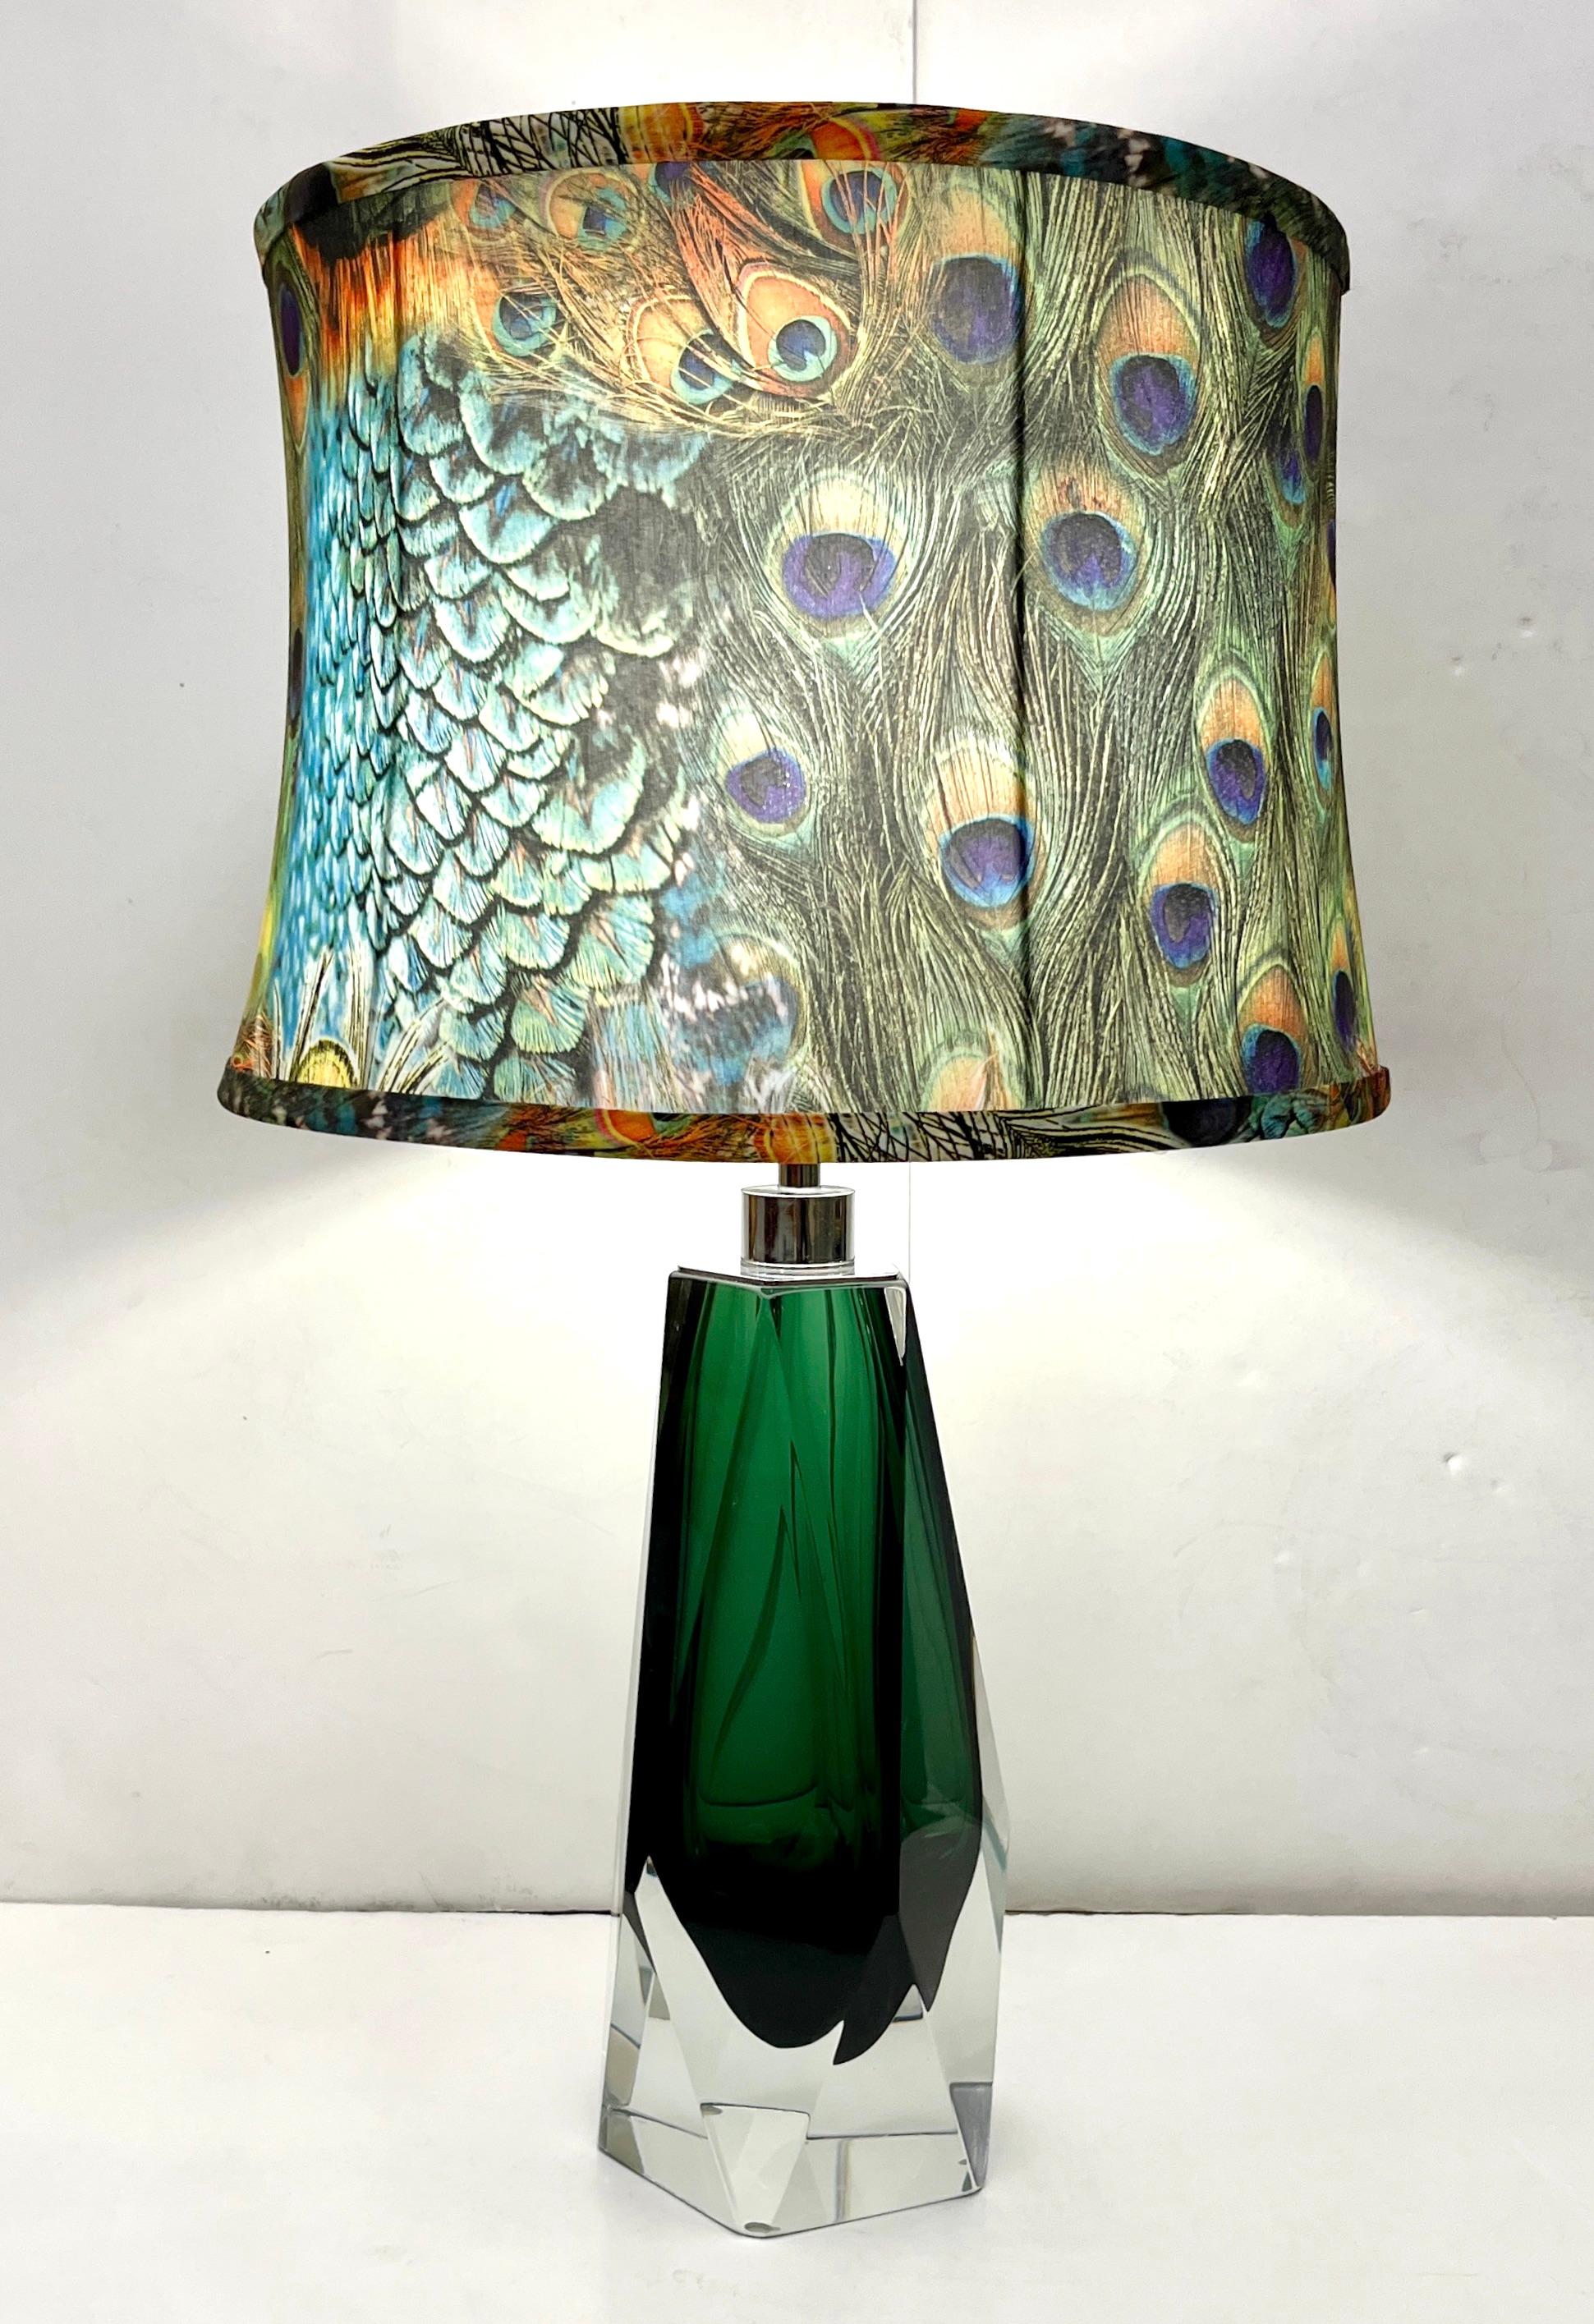 Paire de lampes contemporaines en verre de Murano, œuvre d'art signée par Alberto Donà, entièrement soufflée et réalisée à la main, le corps en verre est taillé au diamant et travaillé en Murano d'un vert profond enveloppé et recouvert de verre de